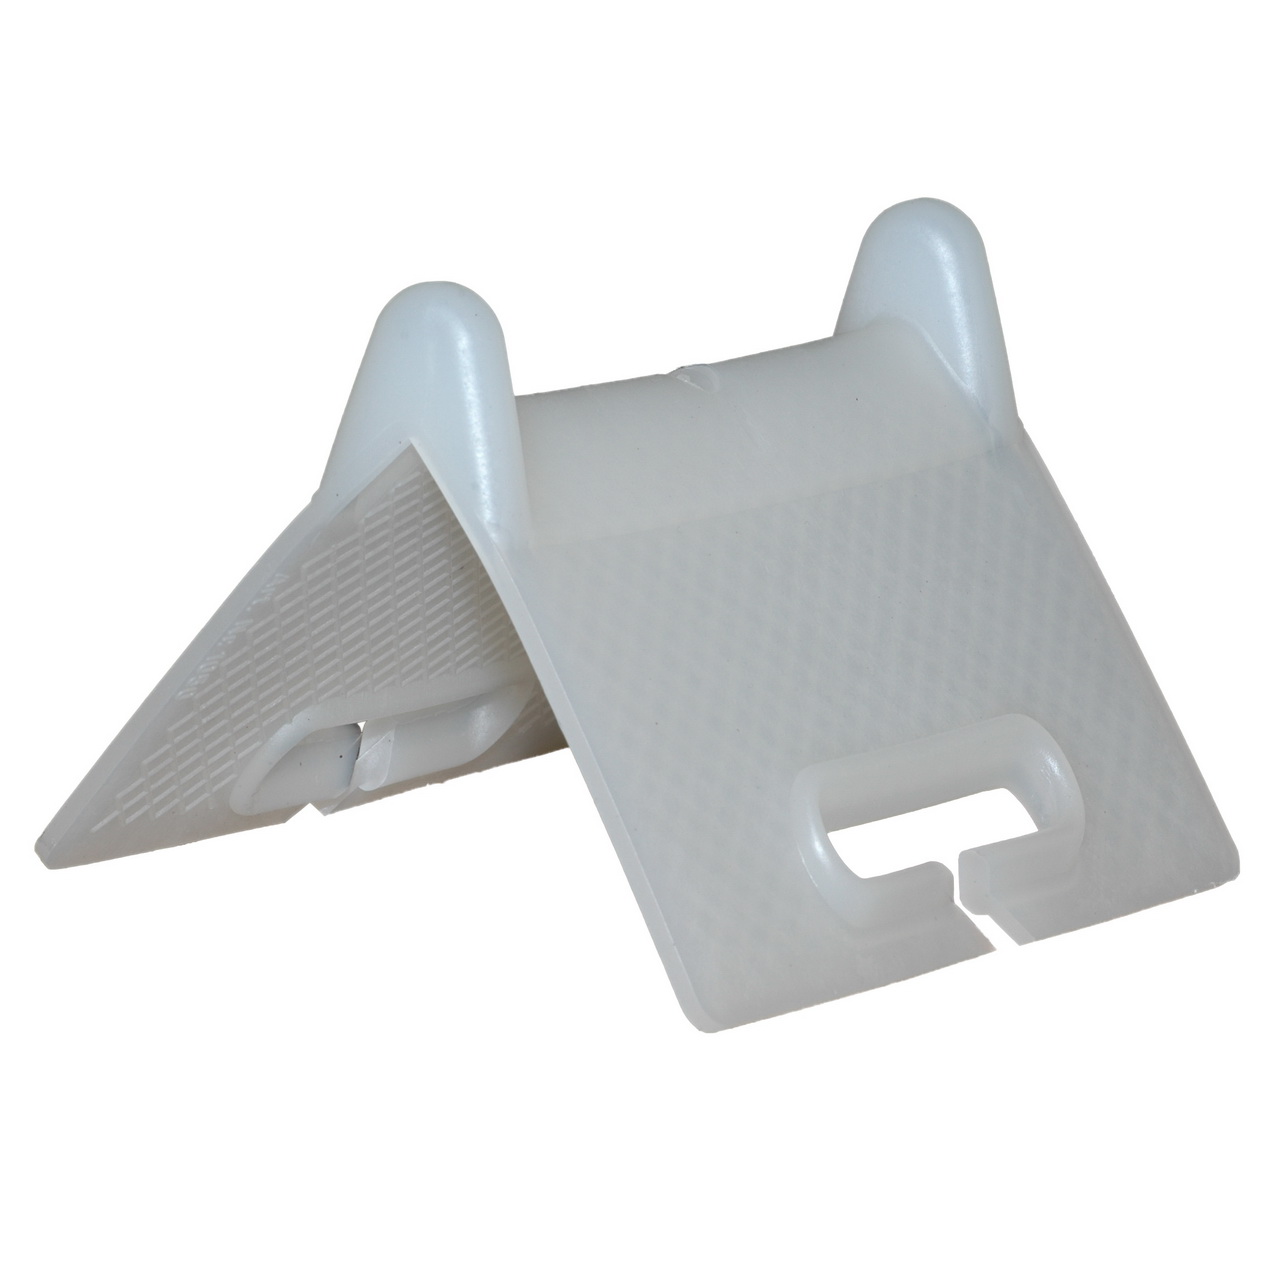 20x Kantenschutz Winkel Ecken PVC Universal weiß zur Ladungssicherung